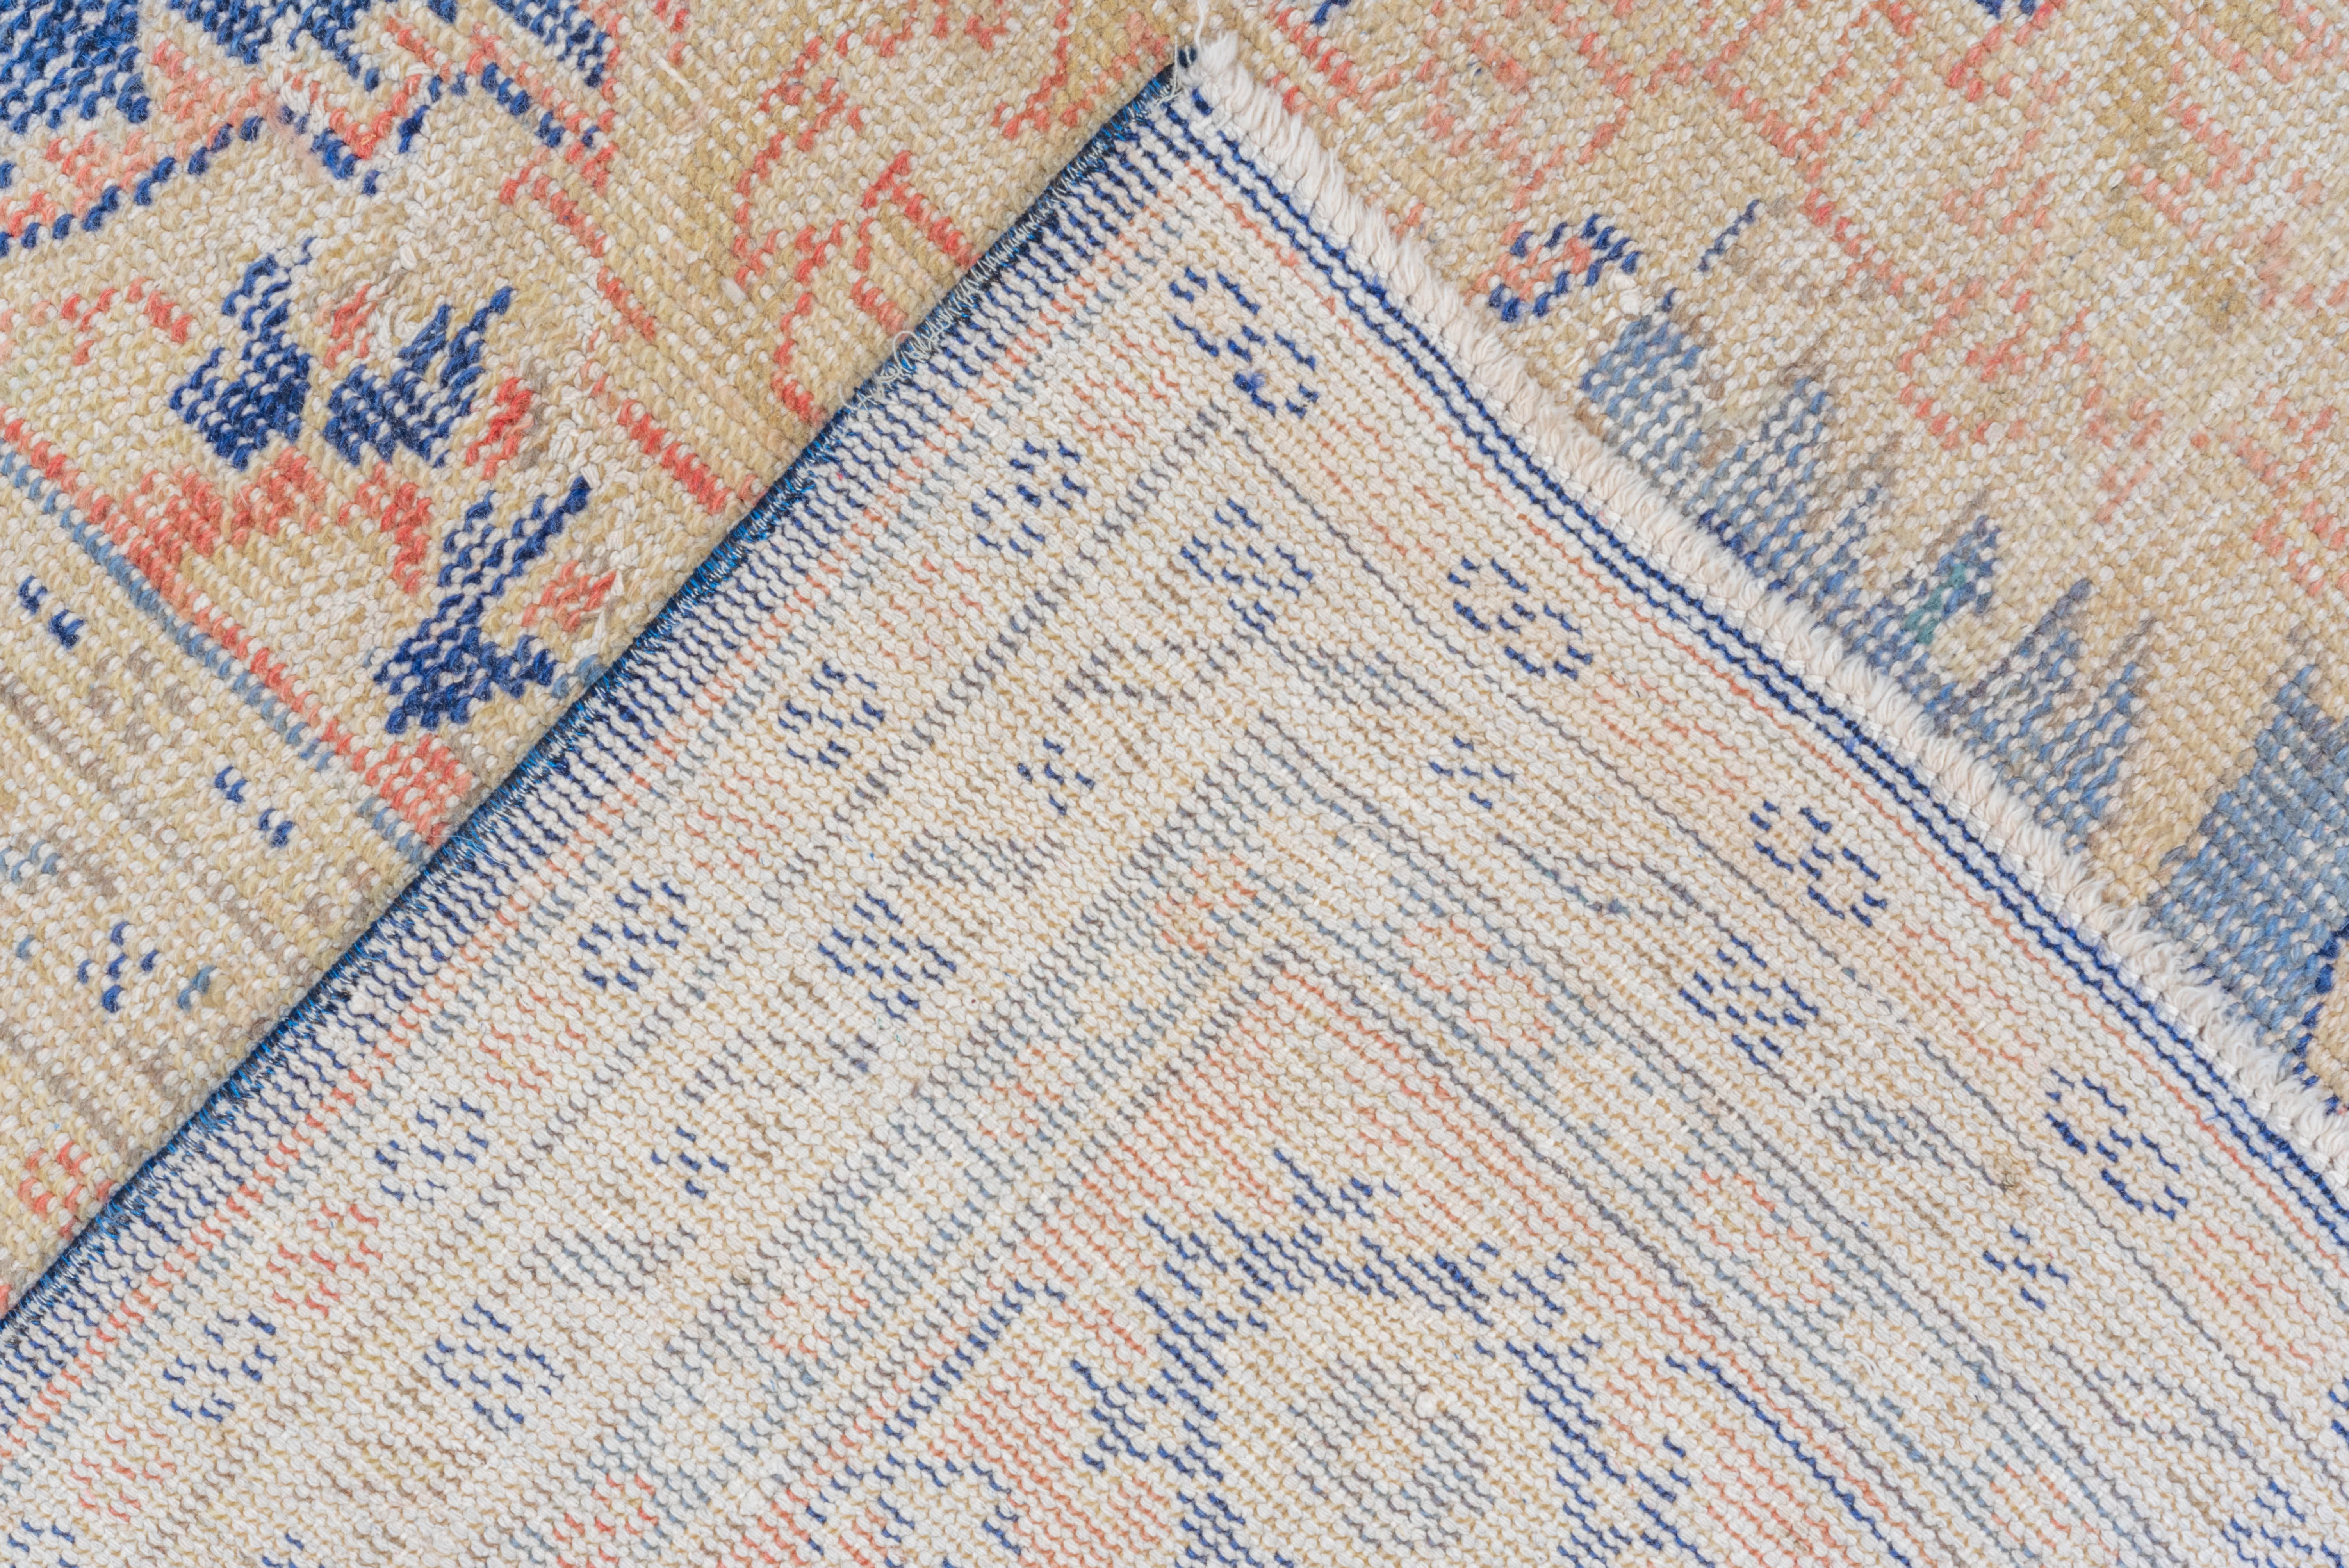 Dieser wunderschöne Oushak-Teppich hat sich durch seine lang anhaltende Schönheit und Qualität bewährt. Die Farben dieser gebrauchten Antiquität sind nach wie vor leuchtend. Dieser Teppich ist ein Unikat, das vor über einem Jahrhundert in der Türkei